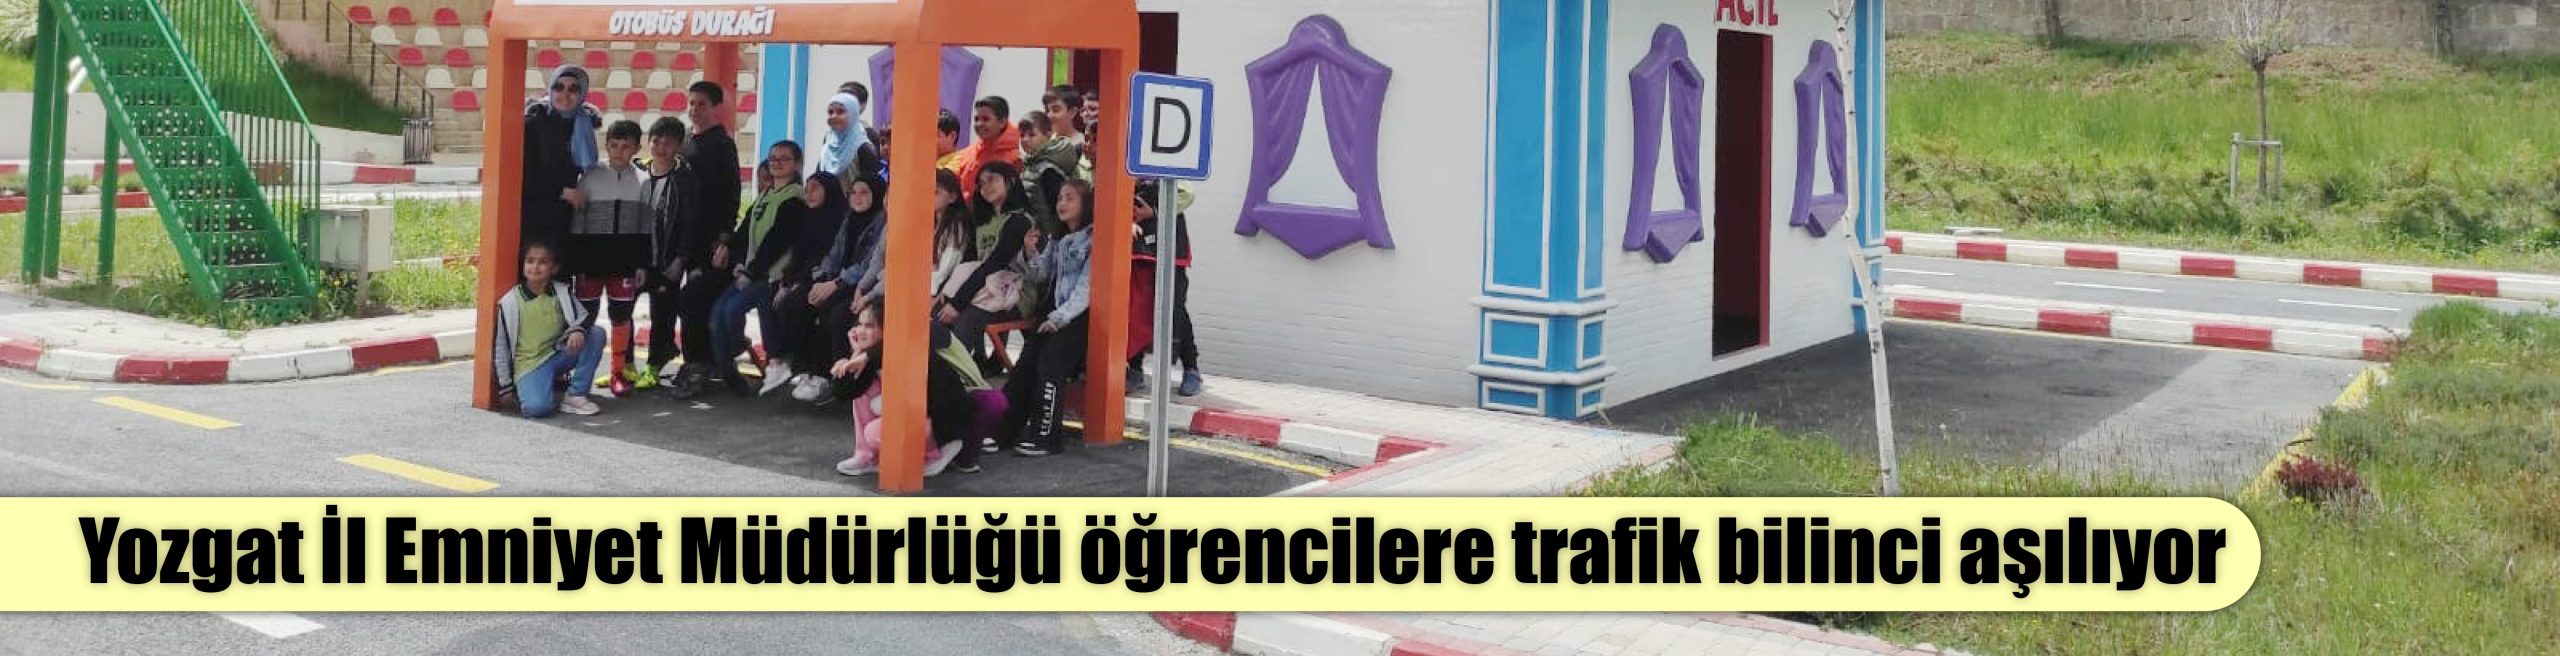 Yozgat İl Emniyet Müdürlüğü öğrencilere trafik bilinci aşılıyor